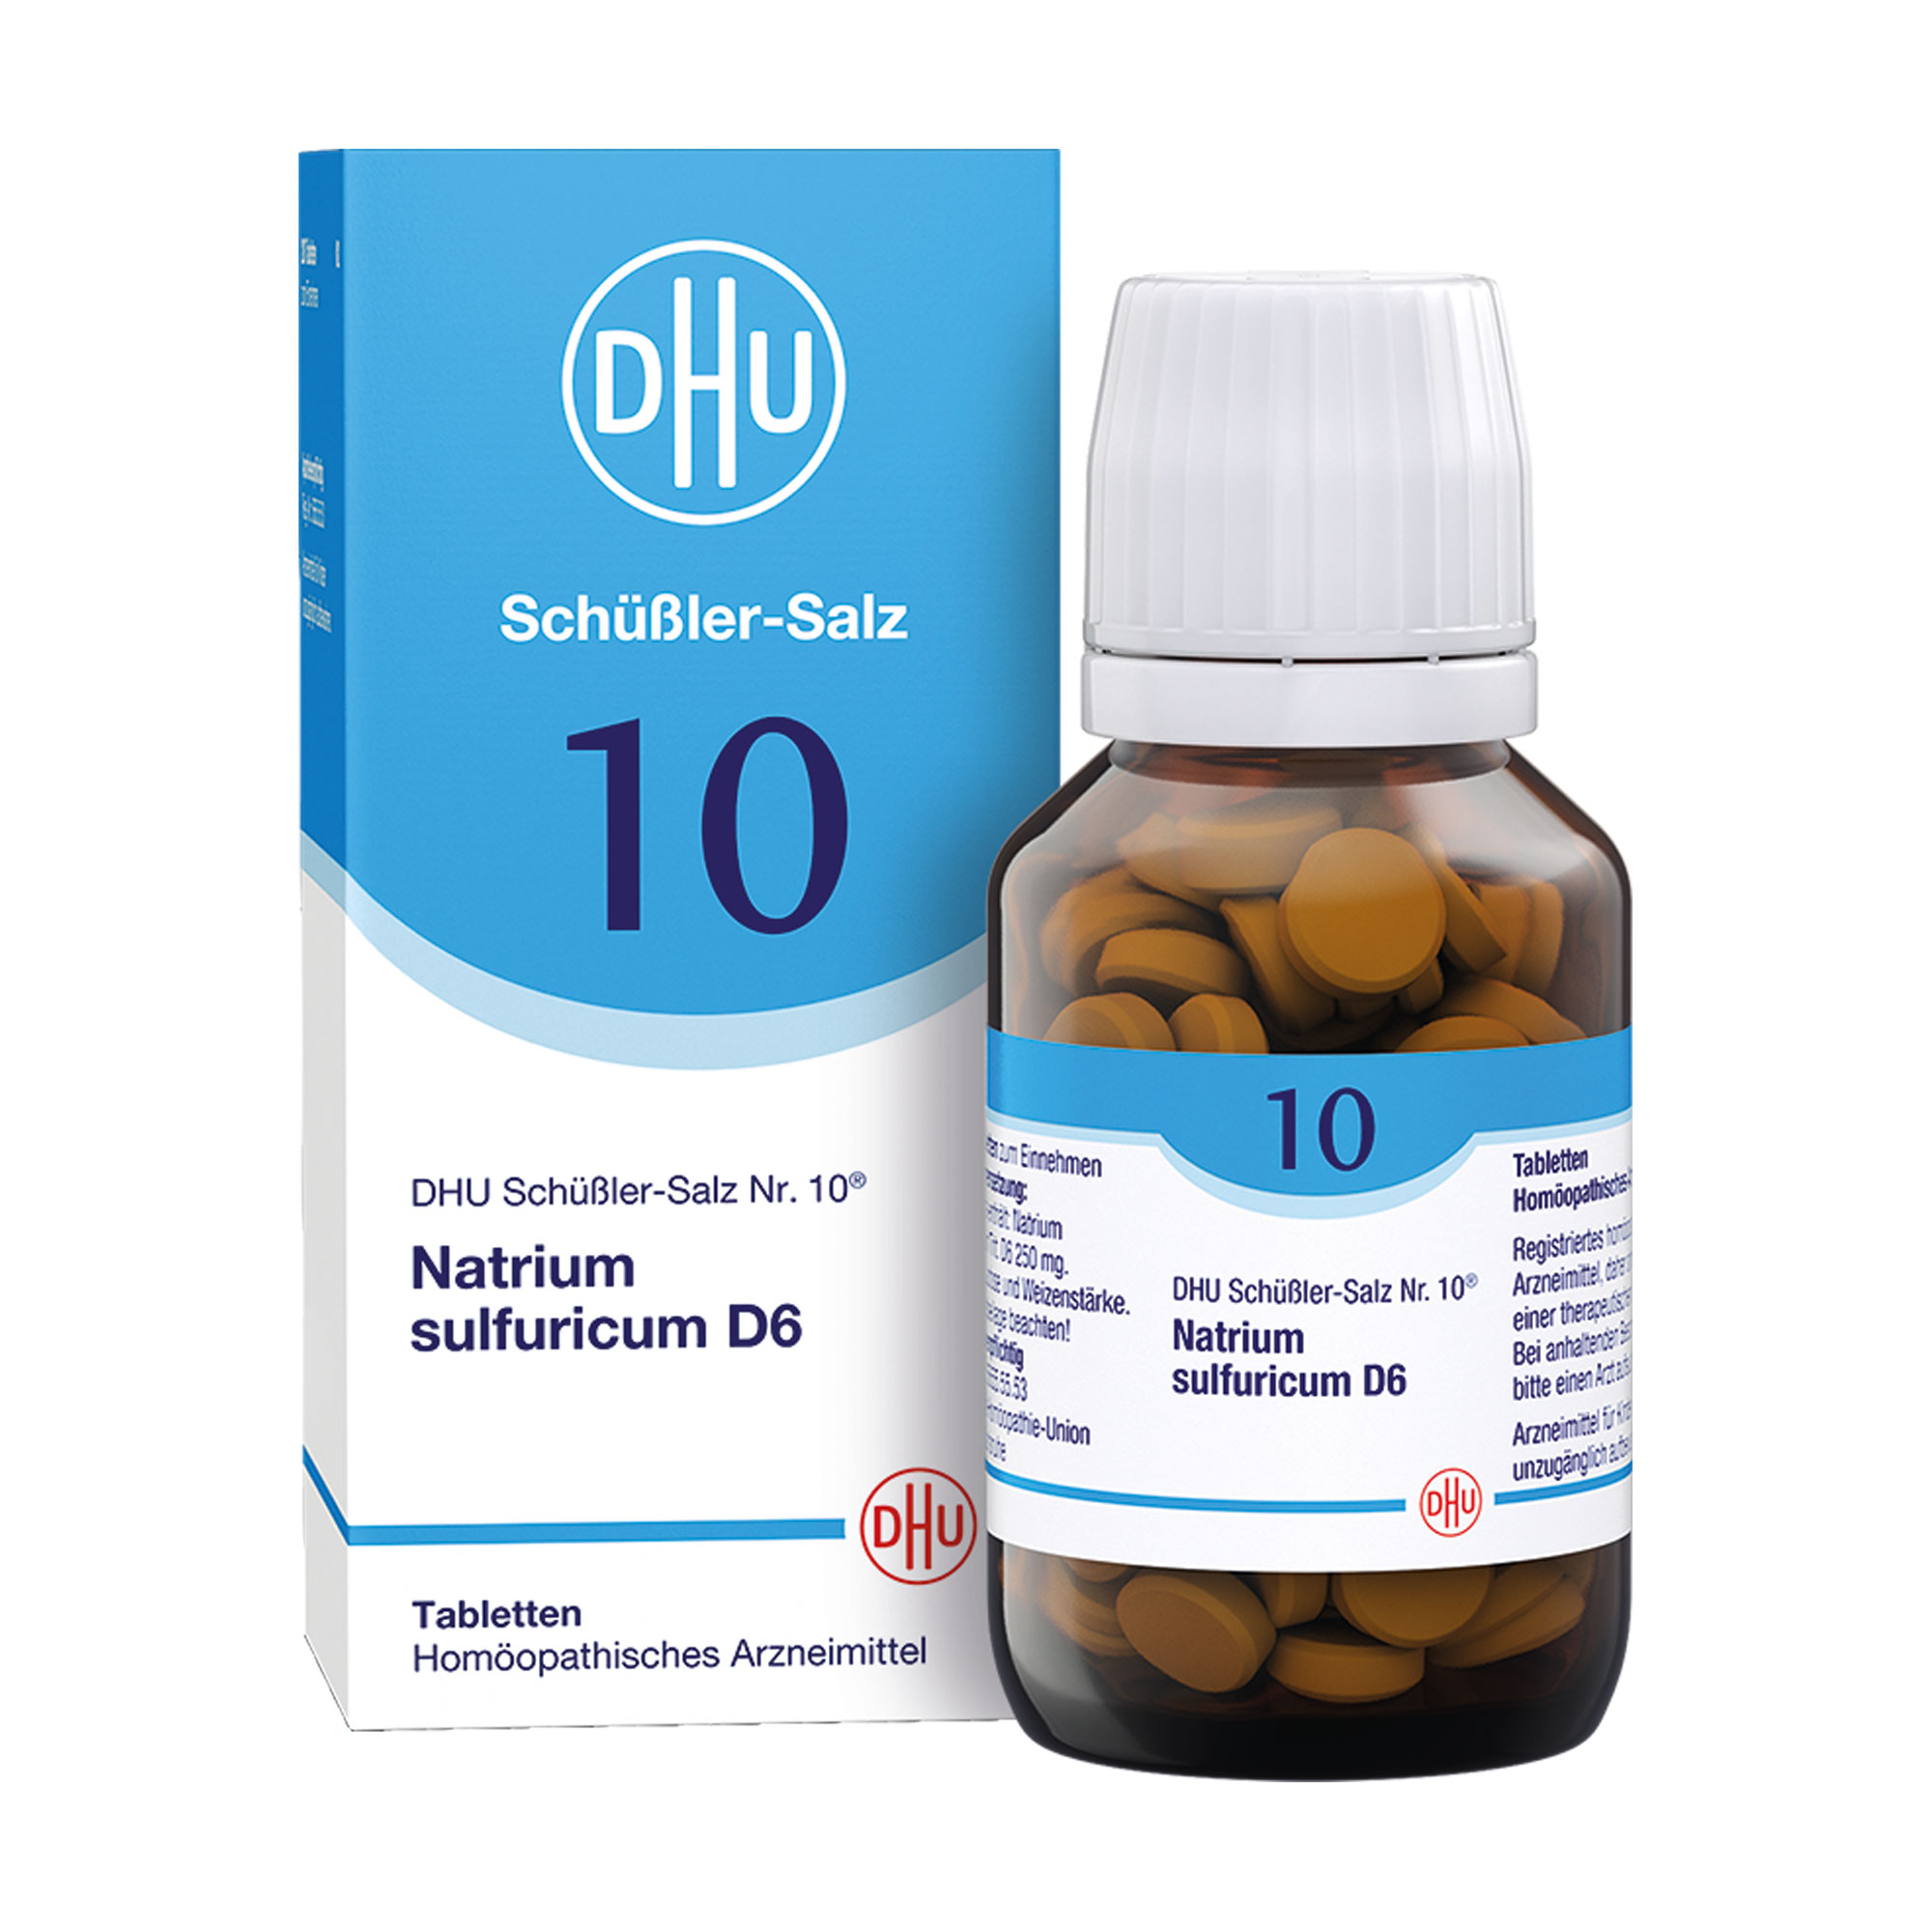 Homöopathisches Arzneimittel mit Natrium sulfuricum Trit. D6.